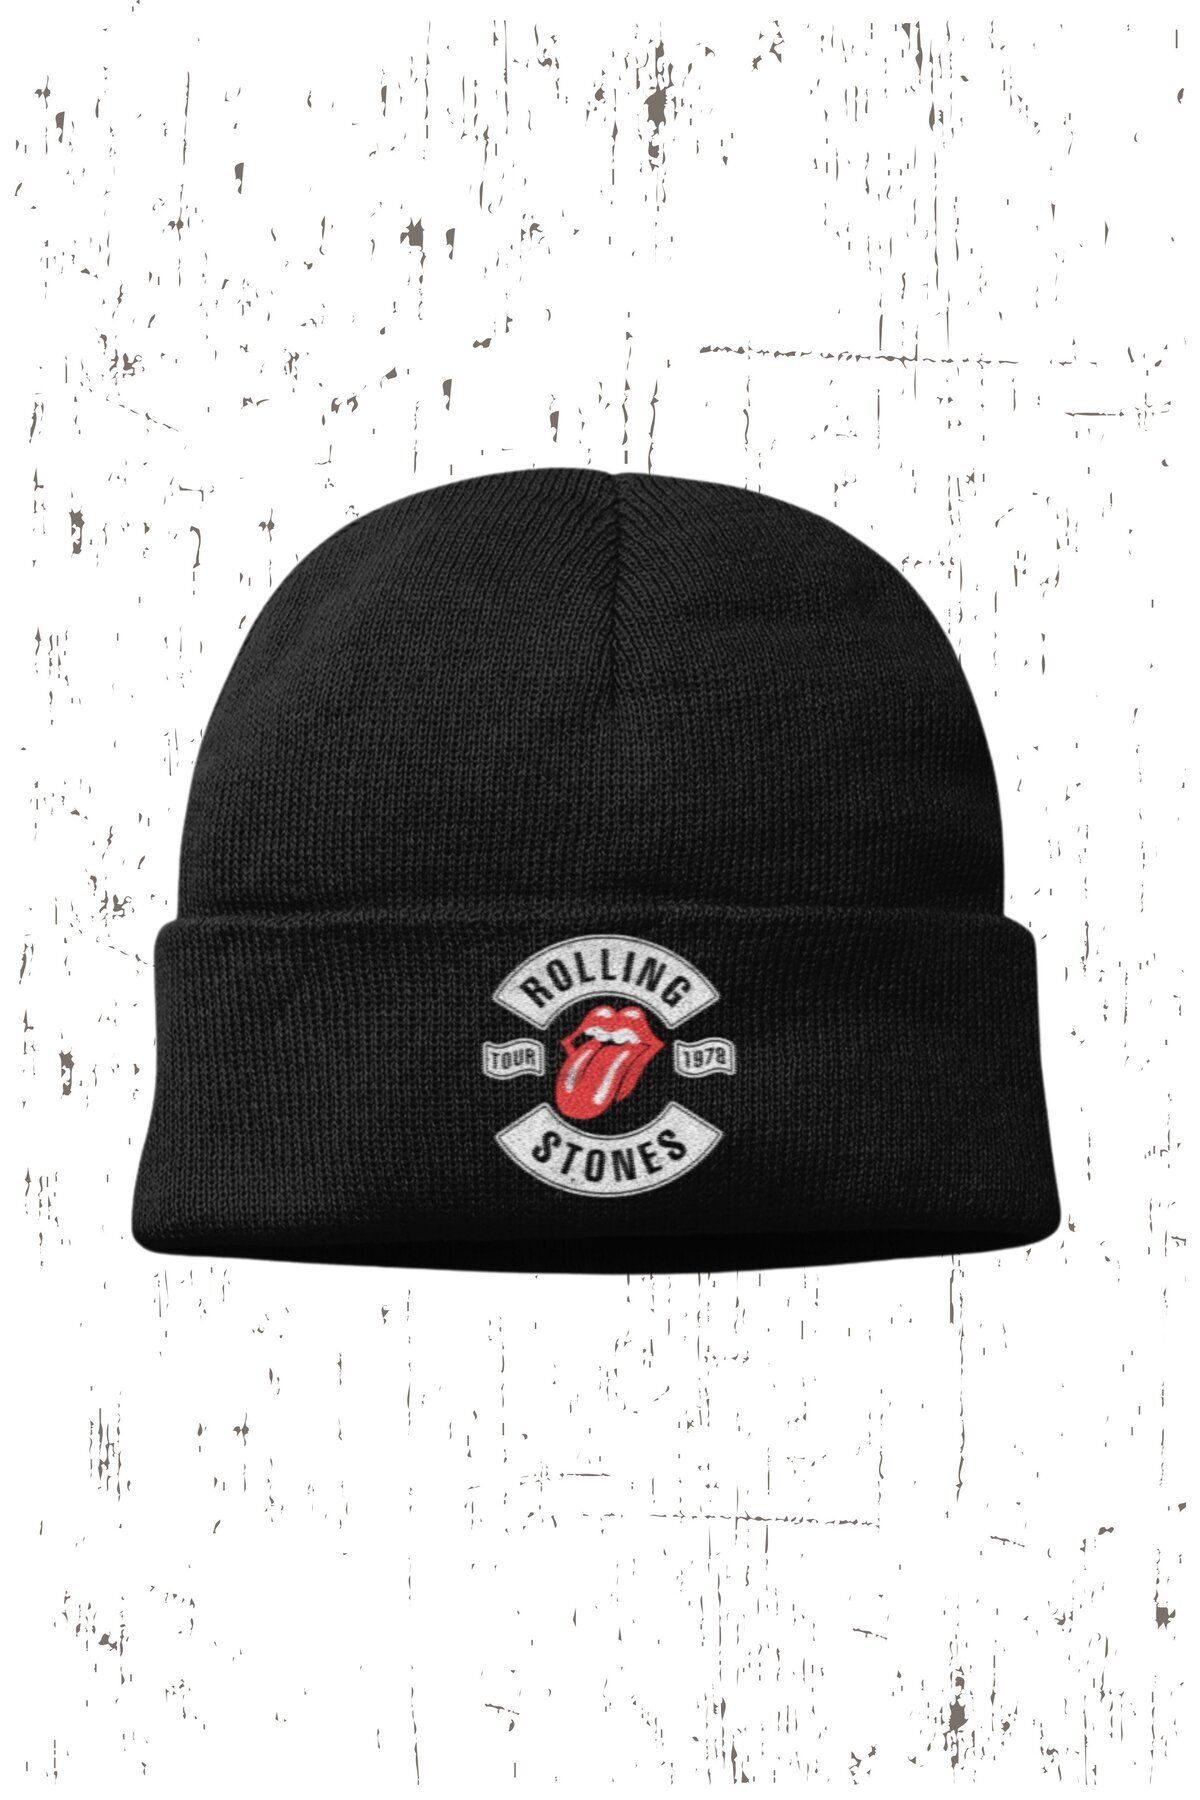 Fuddy Unisex Rolling Stones Yazılı Katlamalı Bere, Rock Metal Baskılı Outdoor Kışlık Şapka